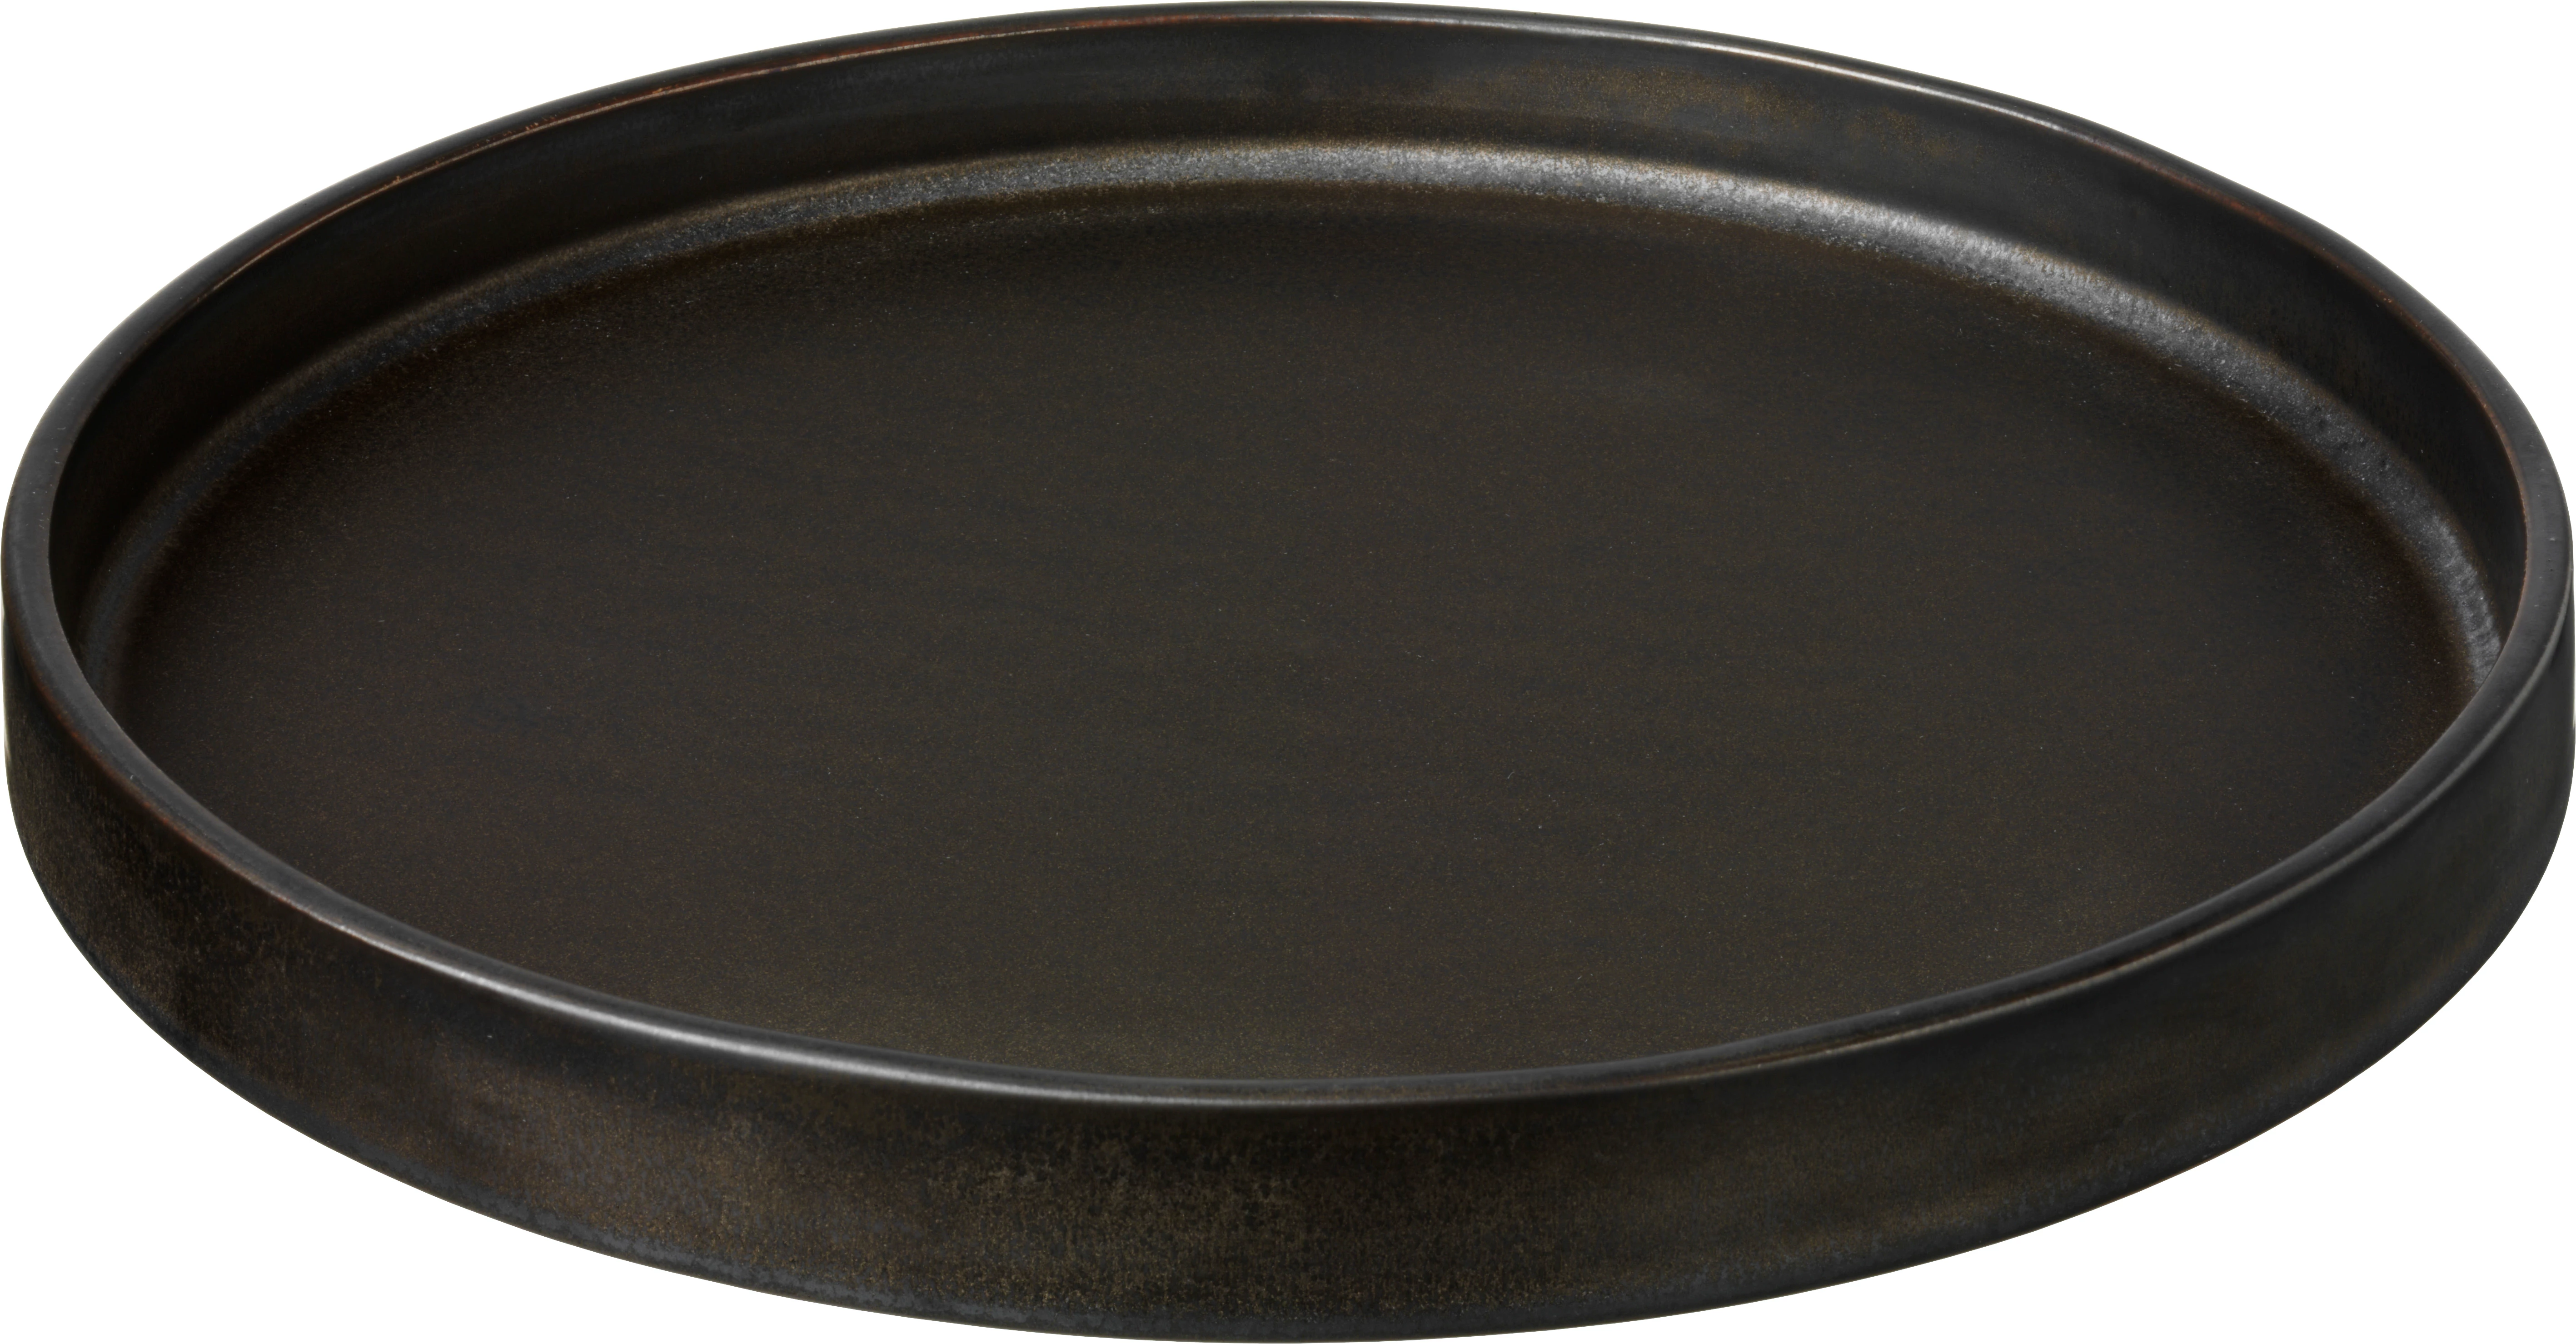 Savannah flad tallerken uden fane, brun, ø24 cm